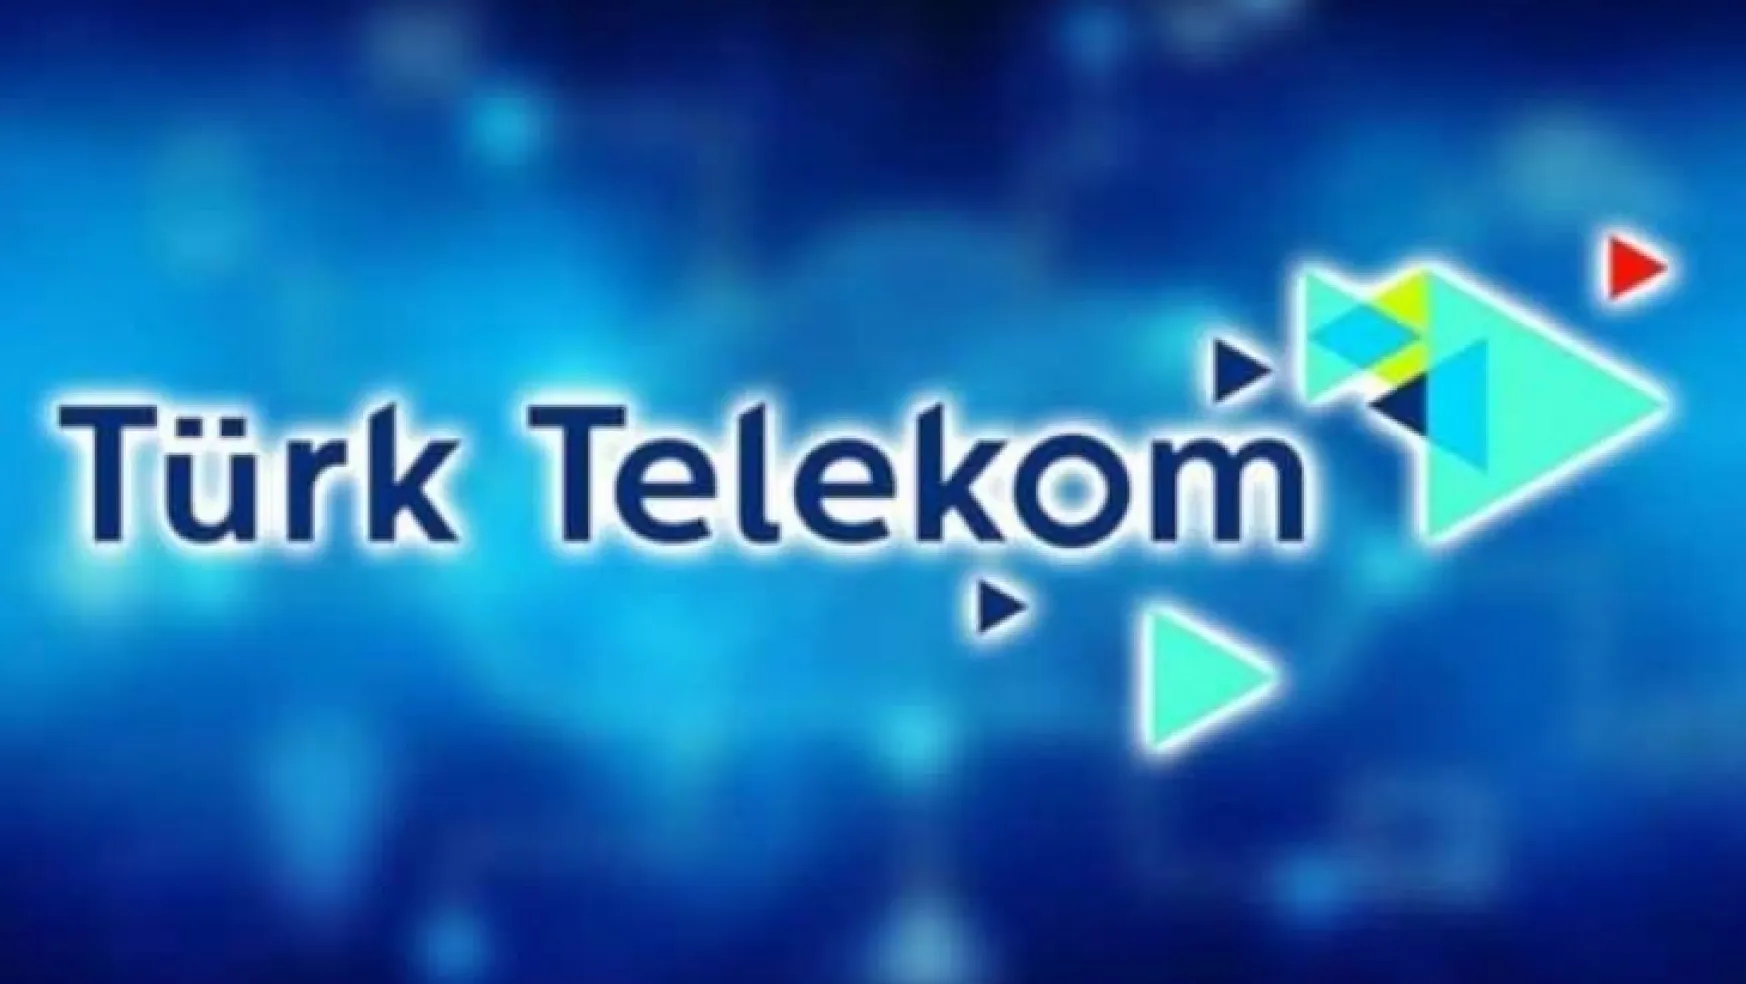 Türk Telekom'dan 'Hoş Geldin' tarifeleri